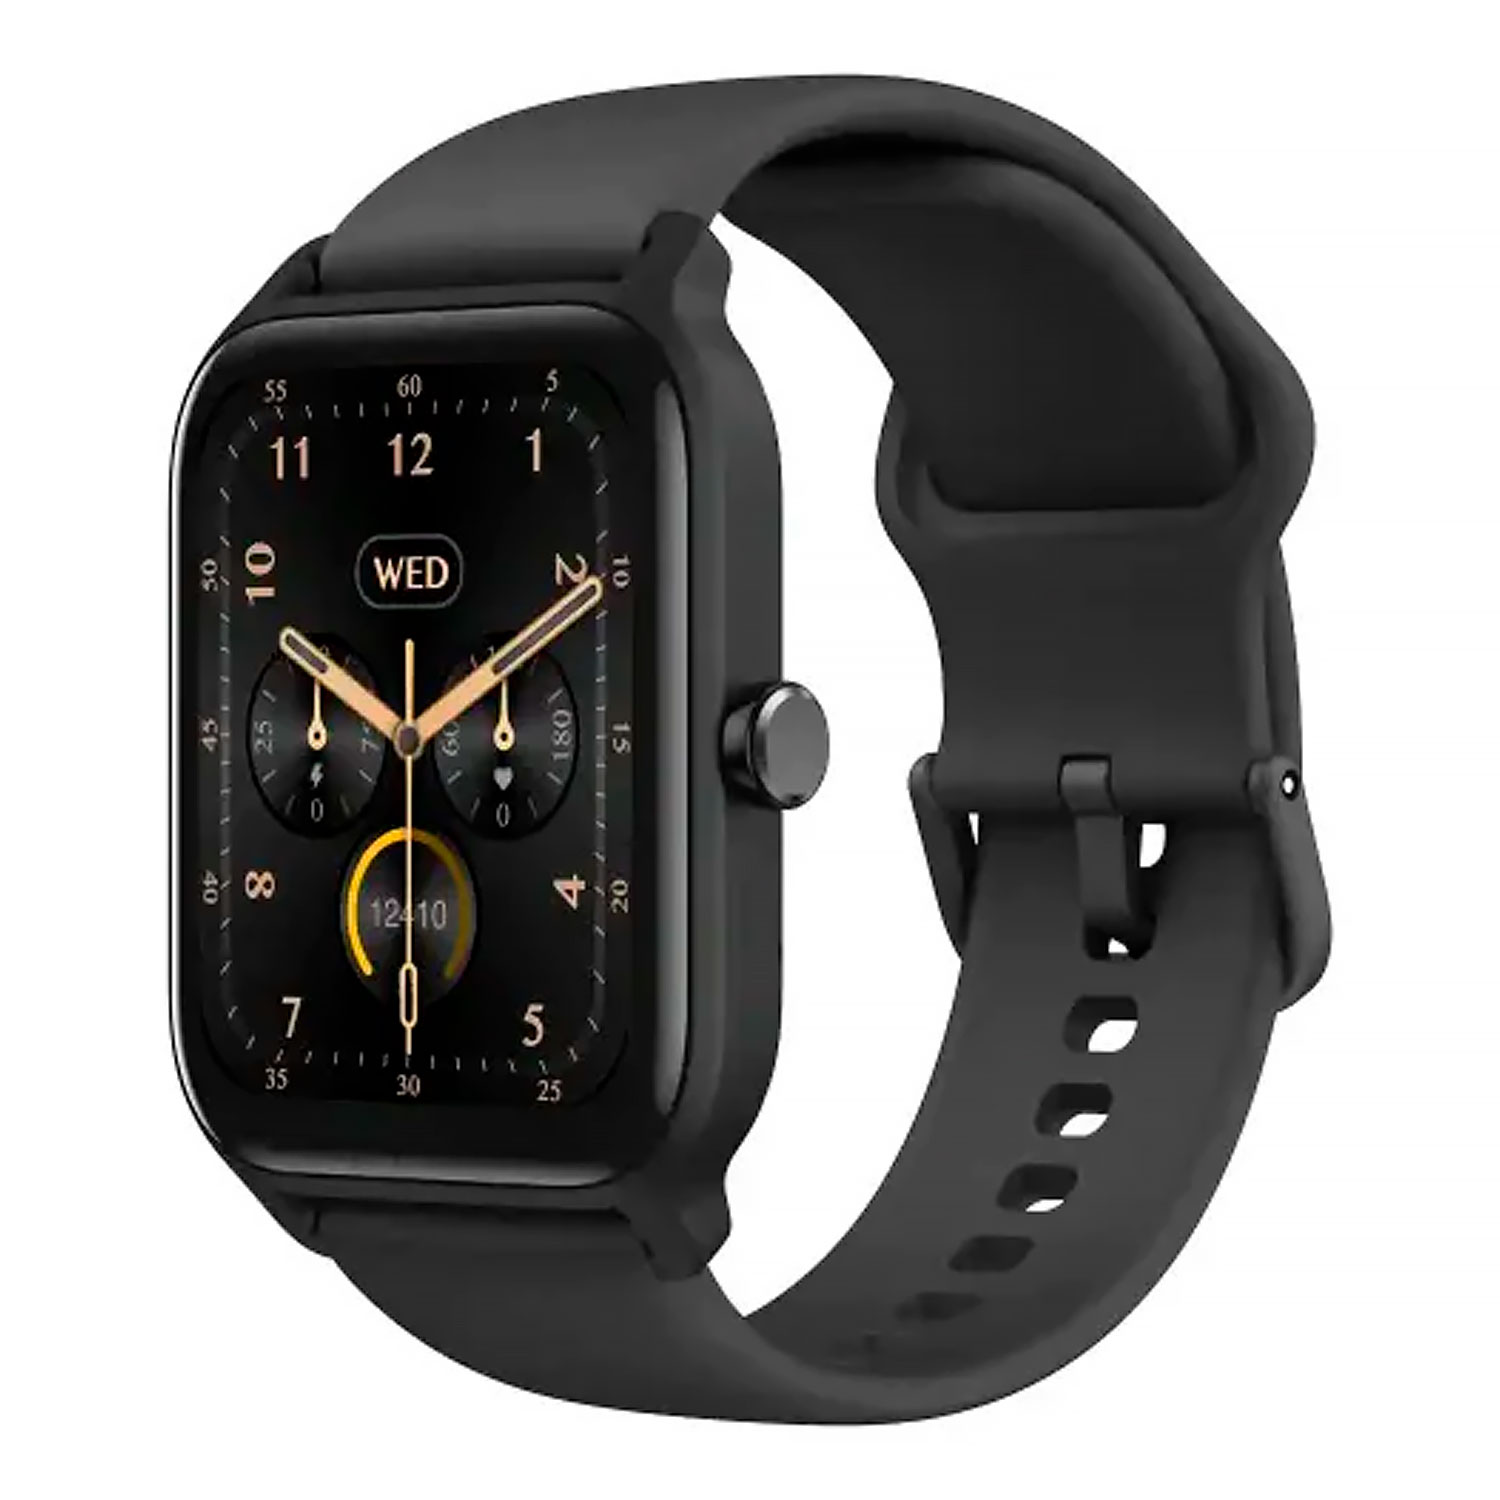 Smartwatch Udfine Watch Starry 42mm Alexa - Preto